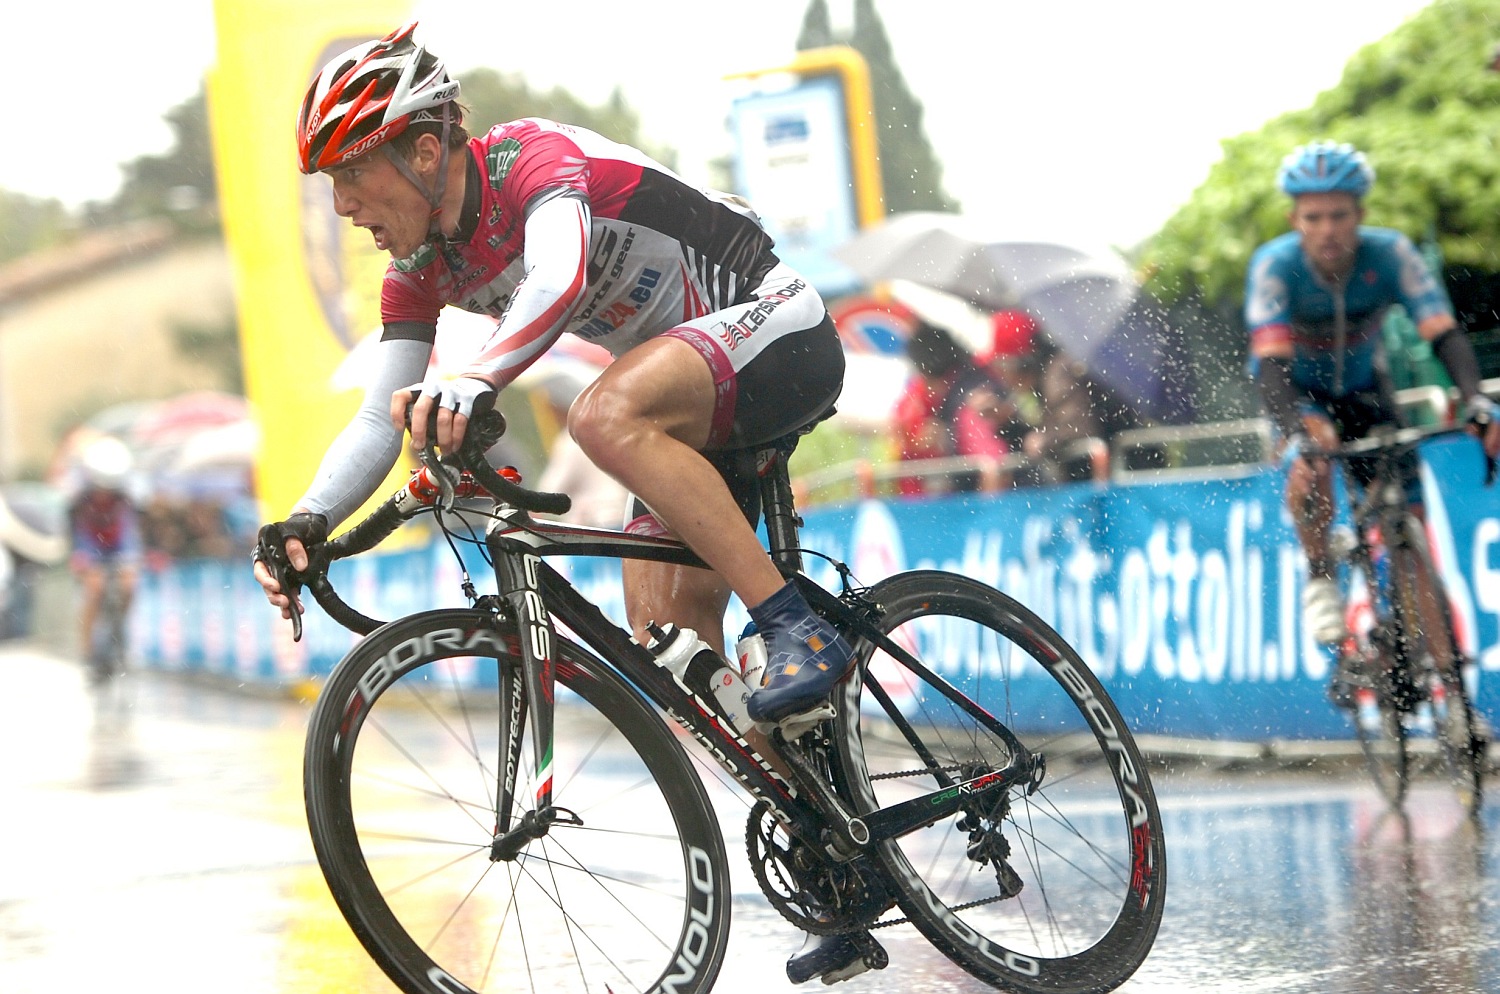 Vasárnap az ugyancsak 1.1 kategóriás Giro di Toscana vár kontinentális csapatunk versenyzőire, hasonló mezőnyben. 